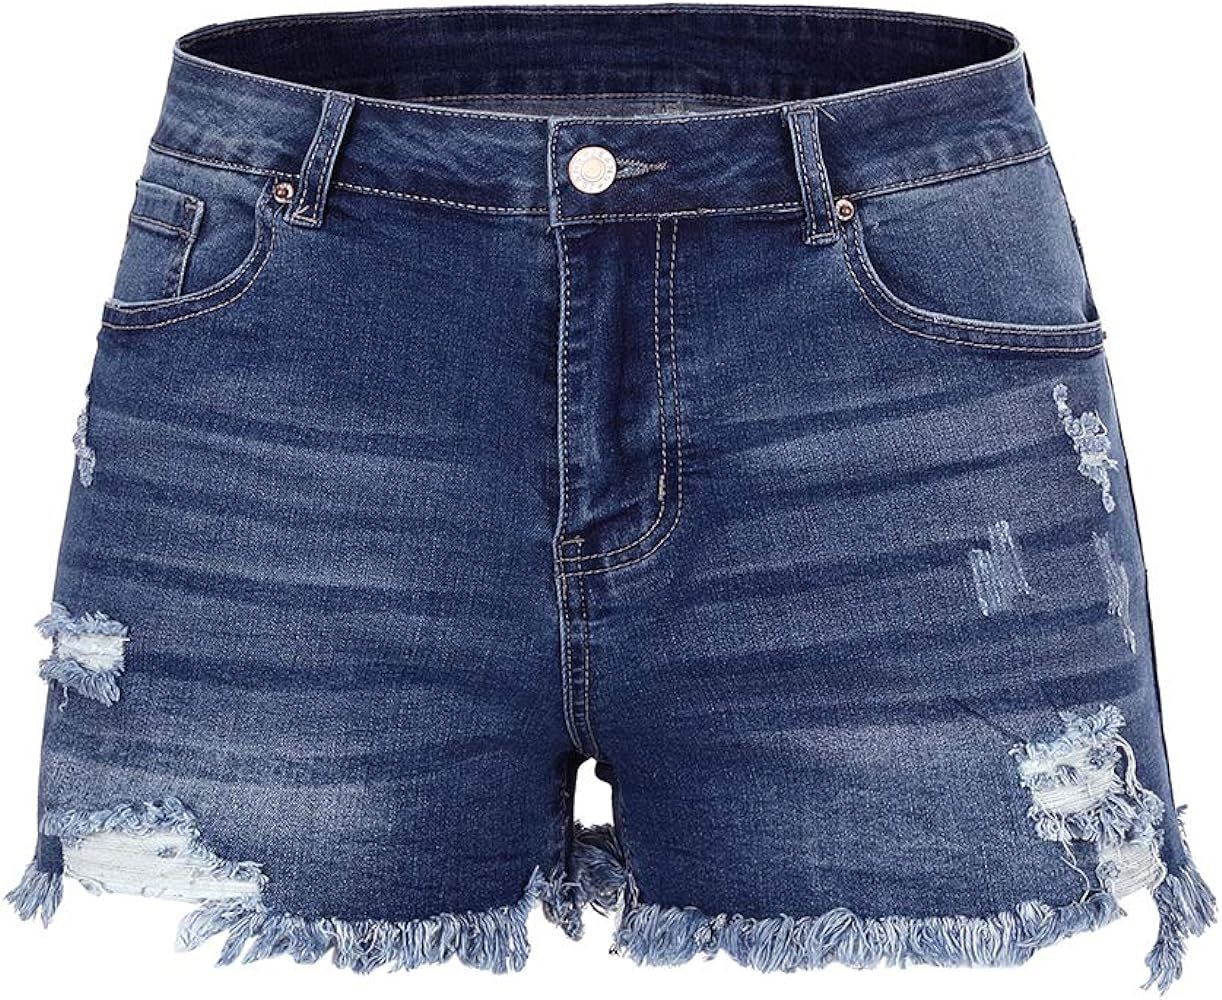 THUNDER STAR - Shorts de jean elásticos, rasgados y de tiro medio para mujer, con dobladillo des... | Amazon (US)